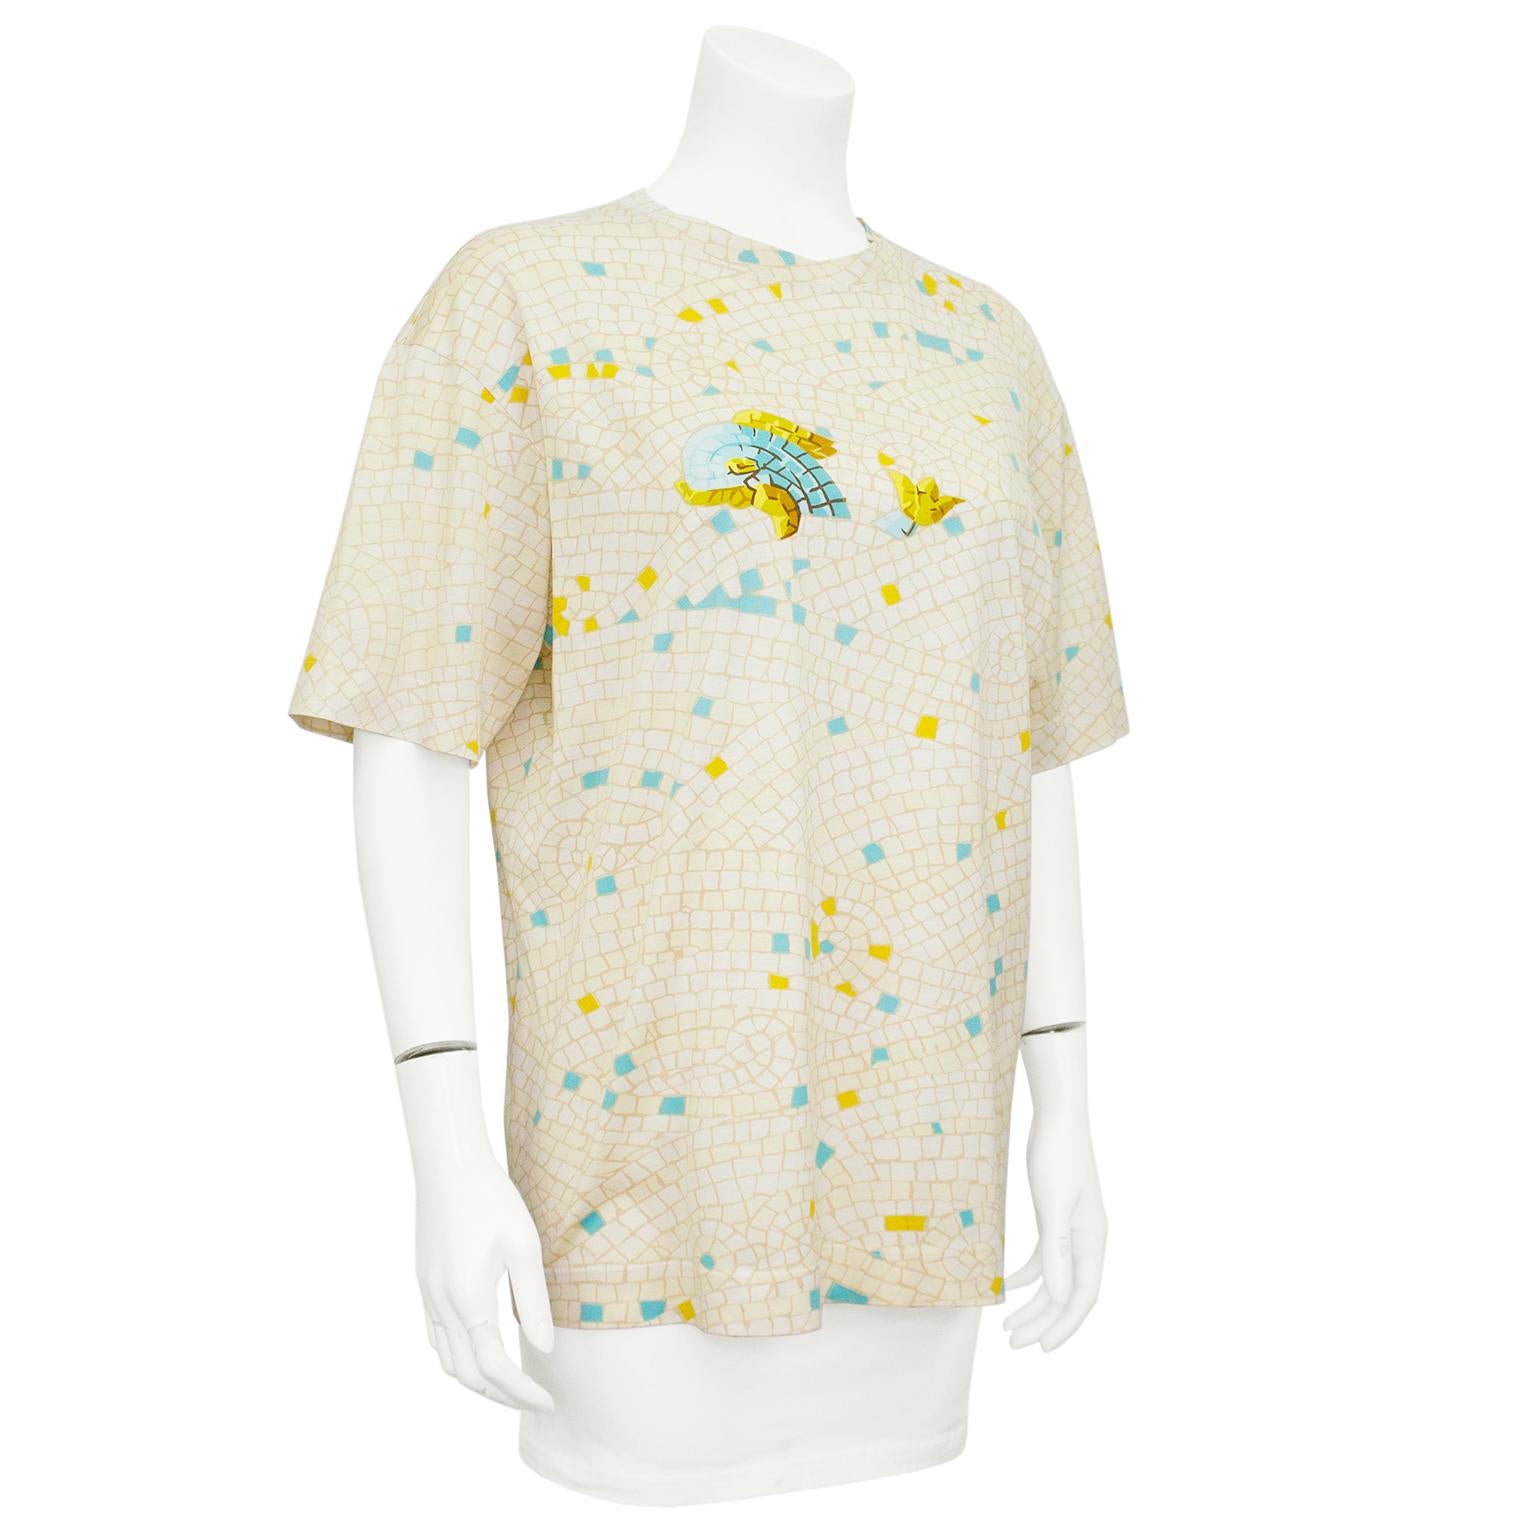 T-shirt Hermès en soie et coton mélangés des années 1990. Impression de carreaux de mosaïque crème et beige sur toute la surface, avec des accents jaunes et turquoise. La face avant présente une baleine en mosaïque turquoise et or. Encolure ras du